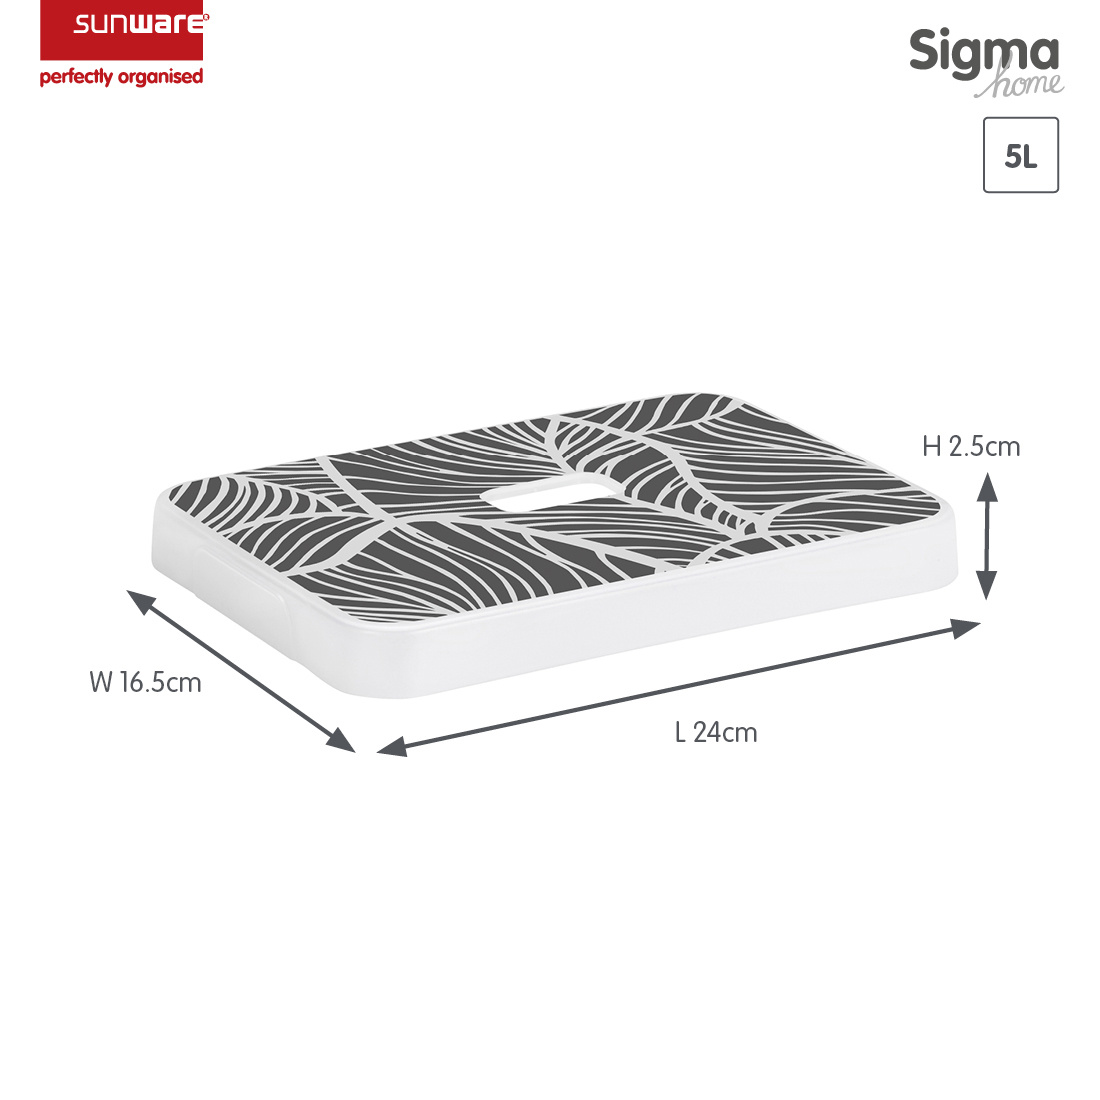 Sigma home couvercle feuilles - boîte de rangement 5L 